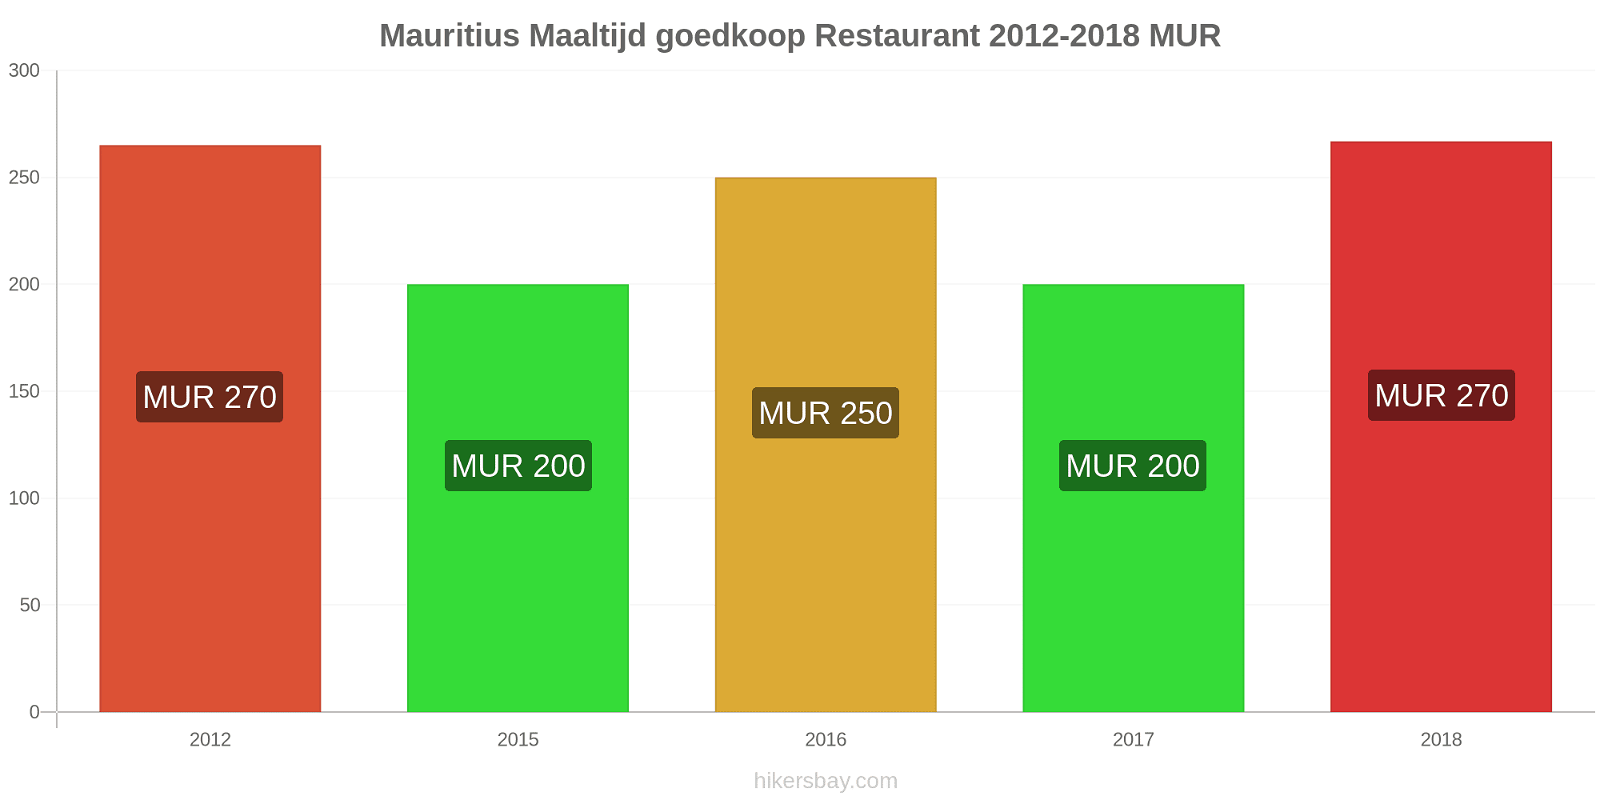 Mauritius prijswijzigingen Maaltijd in een goedkoop restaurant hikersbay.com